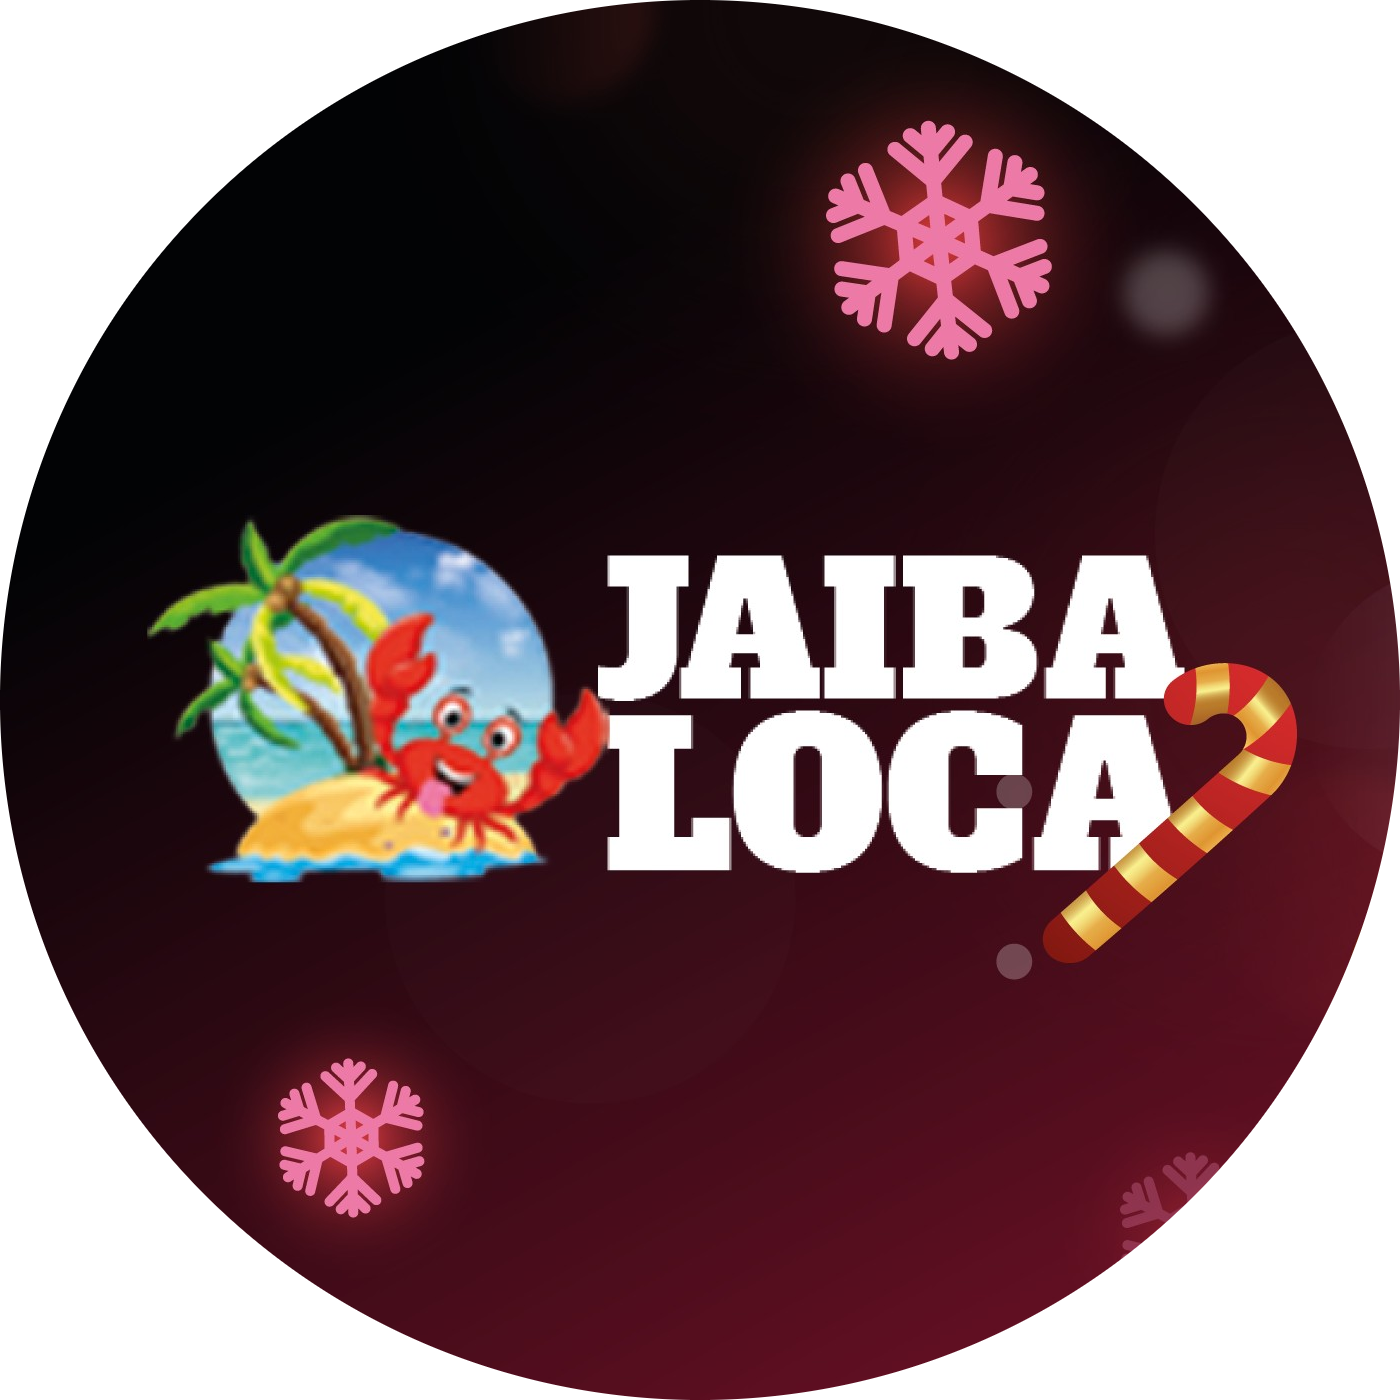 La Jaiba Loca logo